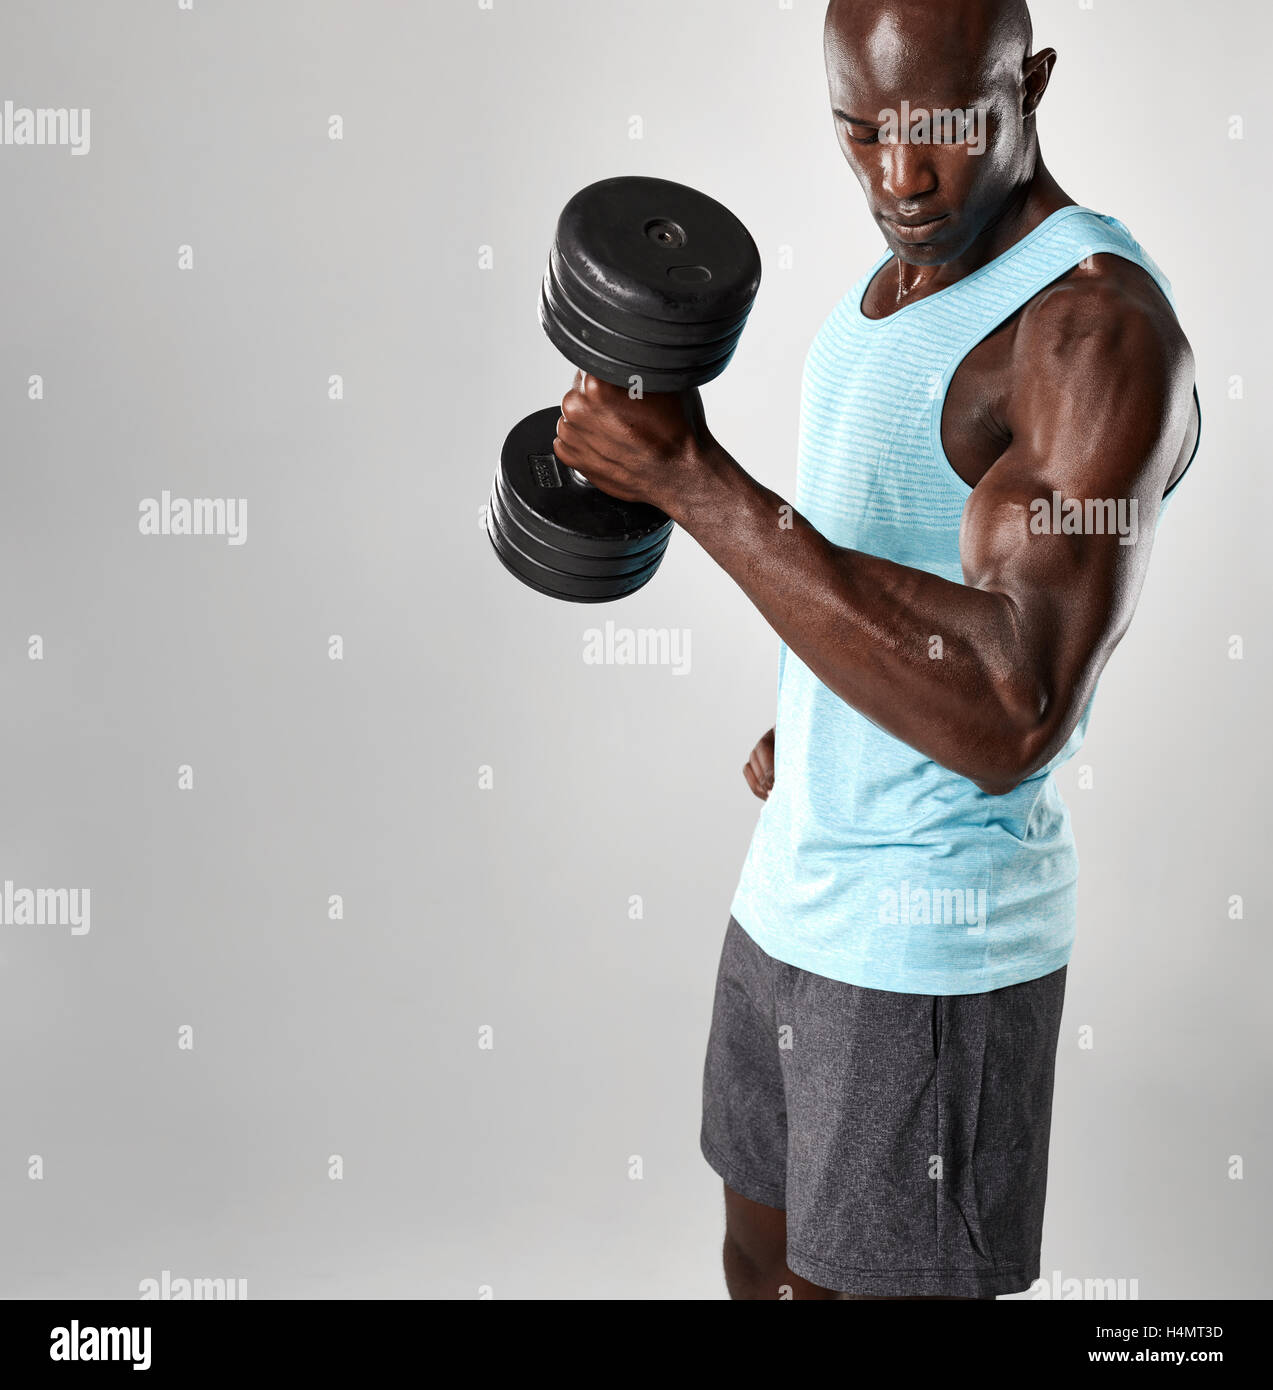 Passen Sie junge Afrikaner trainieren mit Hanteln vor grauem Hintergrund. Muskulöse Schwarze Männermodel heben schwerere Hanteln. Stockfoto